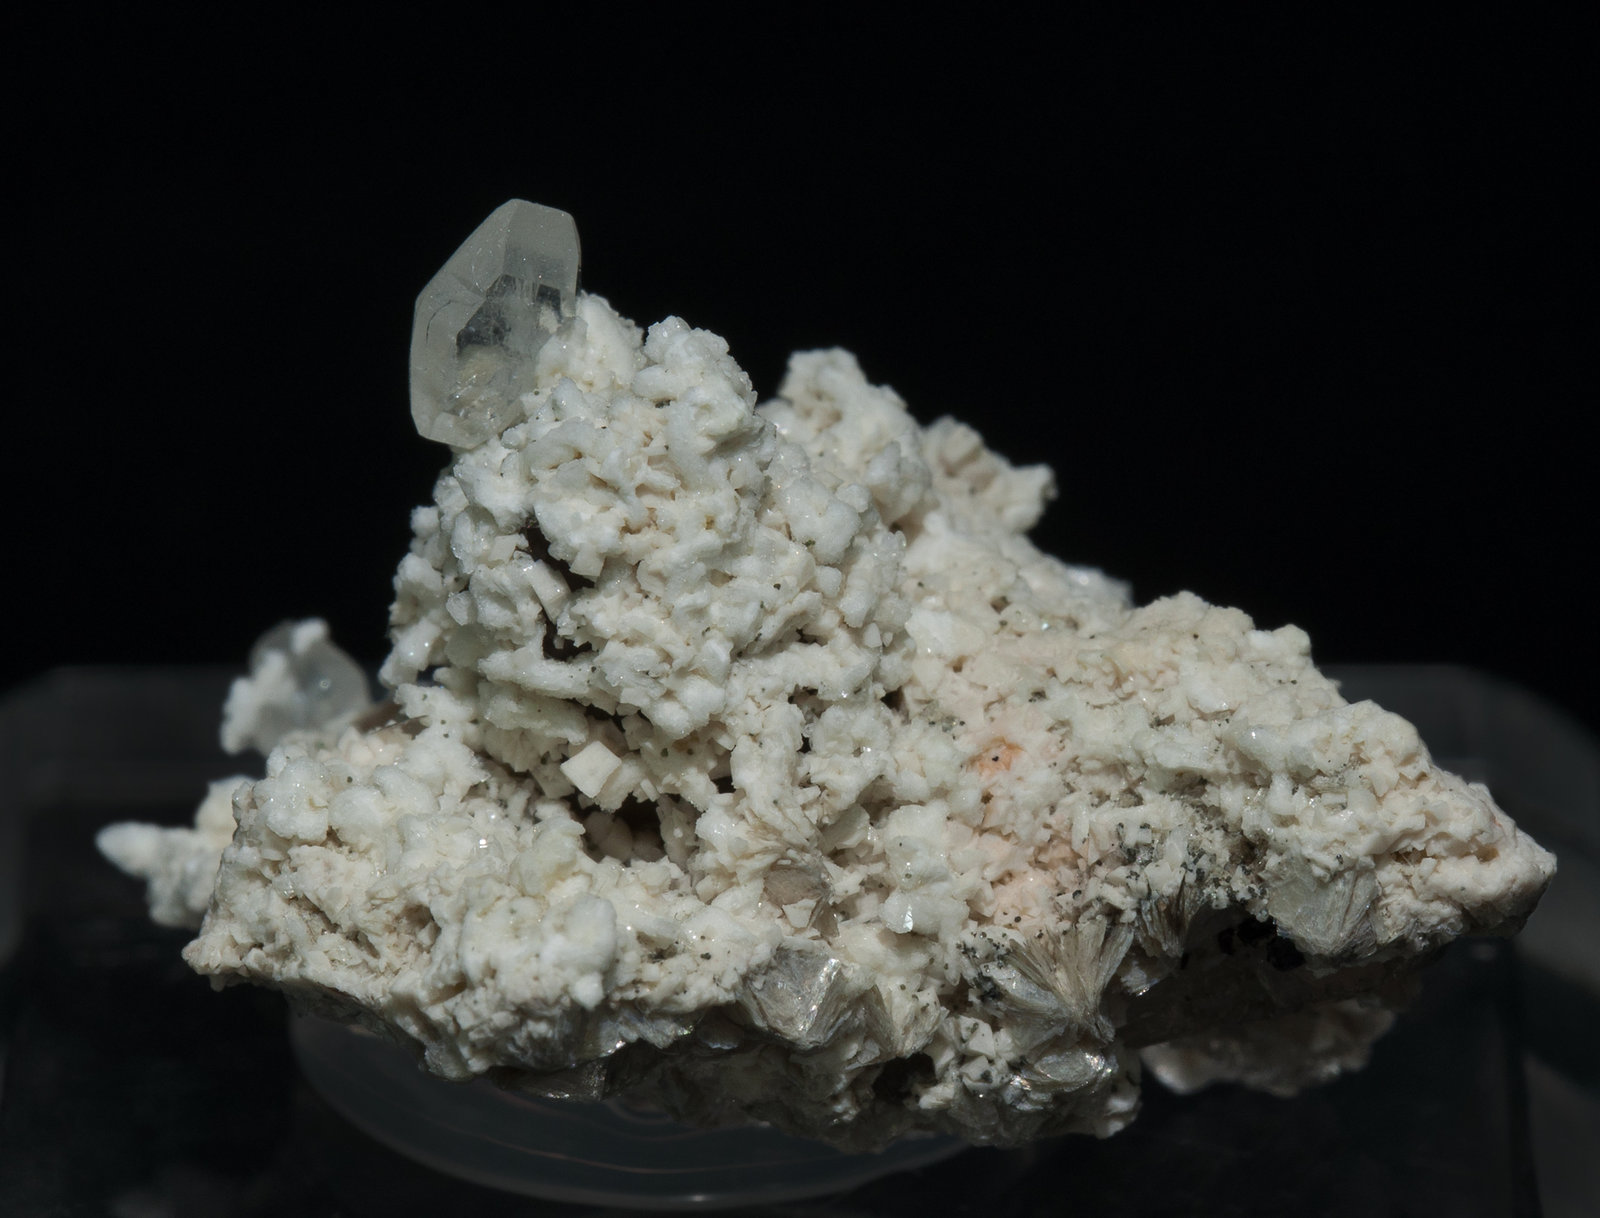 specimens/s_imagesZ5/Stokesite-NA96Z5f.jpg